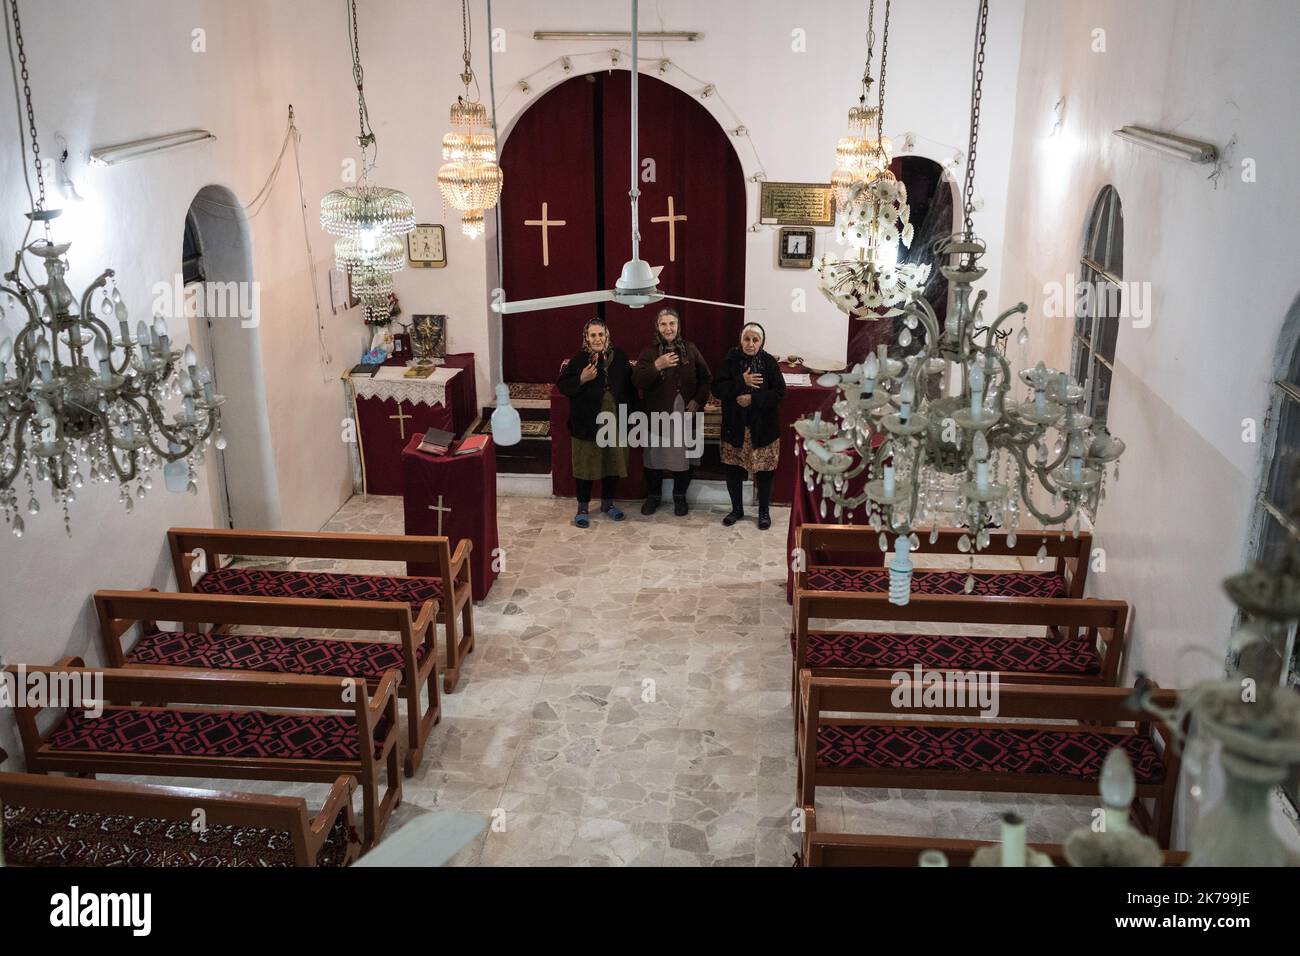 Â©Chris Huby / Le Pictorium/MAXPPP - Chris Huby / Le Pictorium - 24/02/2019  -  Syrie / Syrie du nord / Hassake  -  Vallee du Khabour - un petit village chretien avec quelques familles. Avant 2015 et le passage de Daech, il y avait 300 familles, la plupart sont partis.  / 24/02/2019  -  Syria / northern syria / Hassake  -  Khabour Valley - a small Christian village with a few families. Before 2015 and the passage of Daesh, there were 300 families, most of them left. Stock Photo